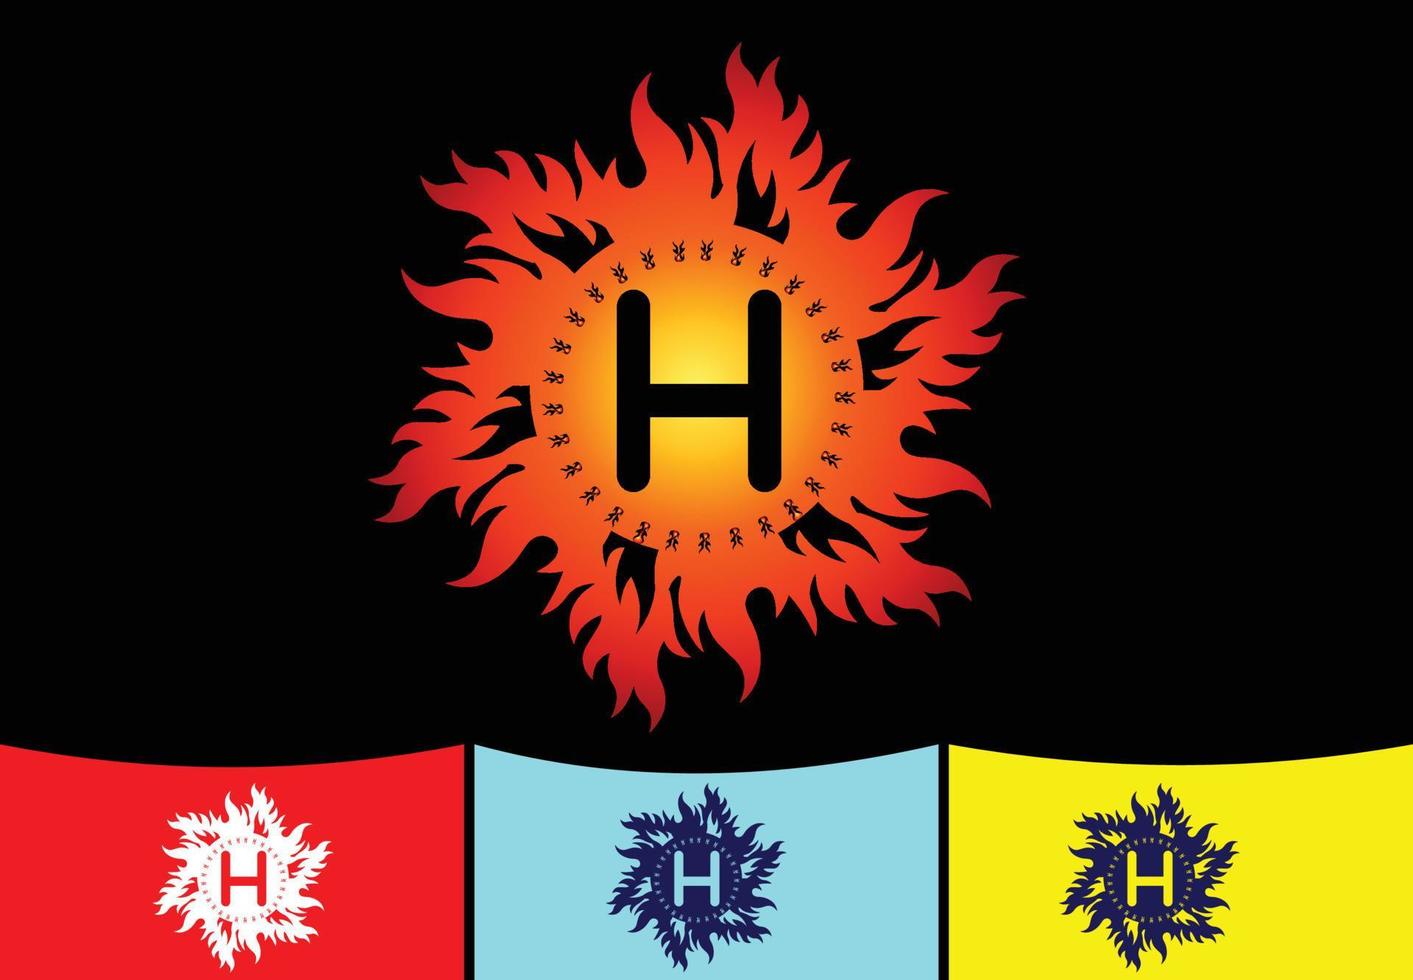 Plantilla de diseño de logotipo e icono de letra H de fuego vector